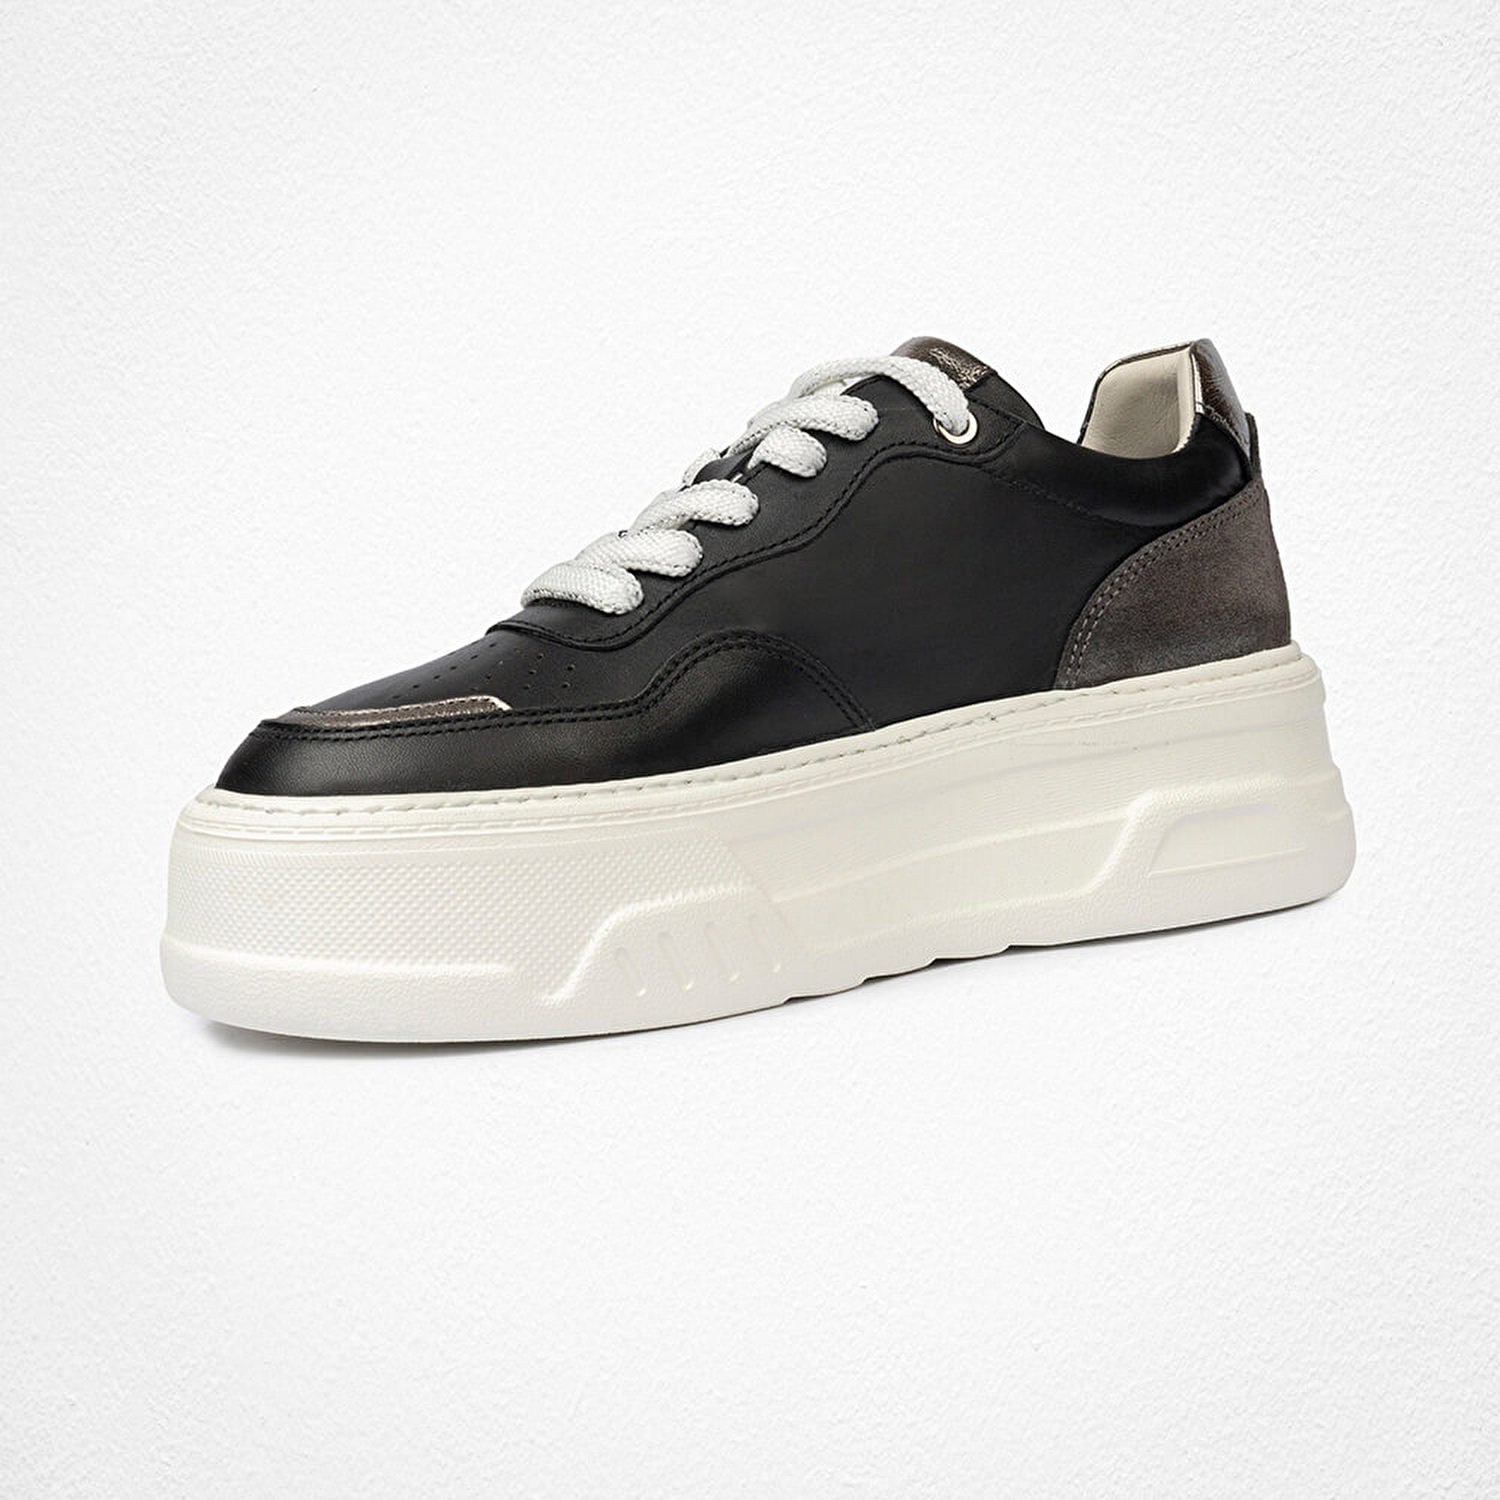 Kadın Siyah Çelik Hakiki Deri Sneaker Ayakkabı 4Y2SA59041-3